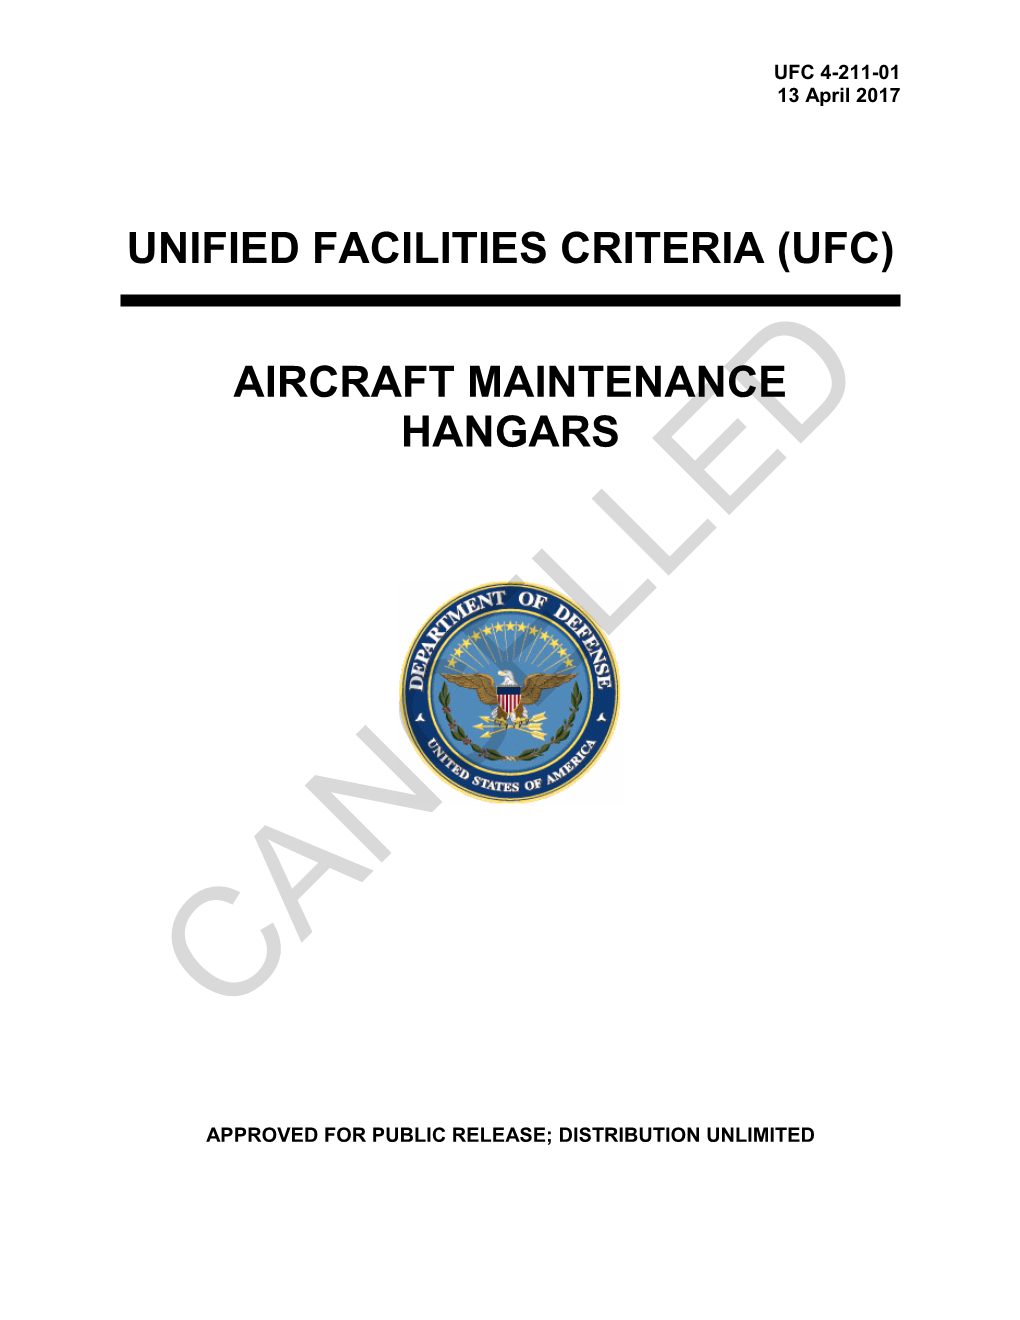 UFC 4-211-01 Aircraft Maintenance Hangars